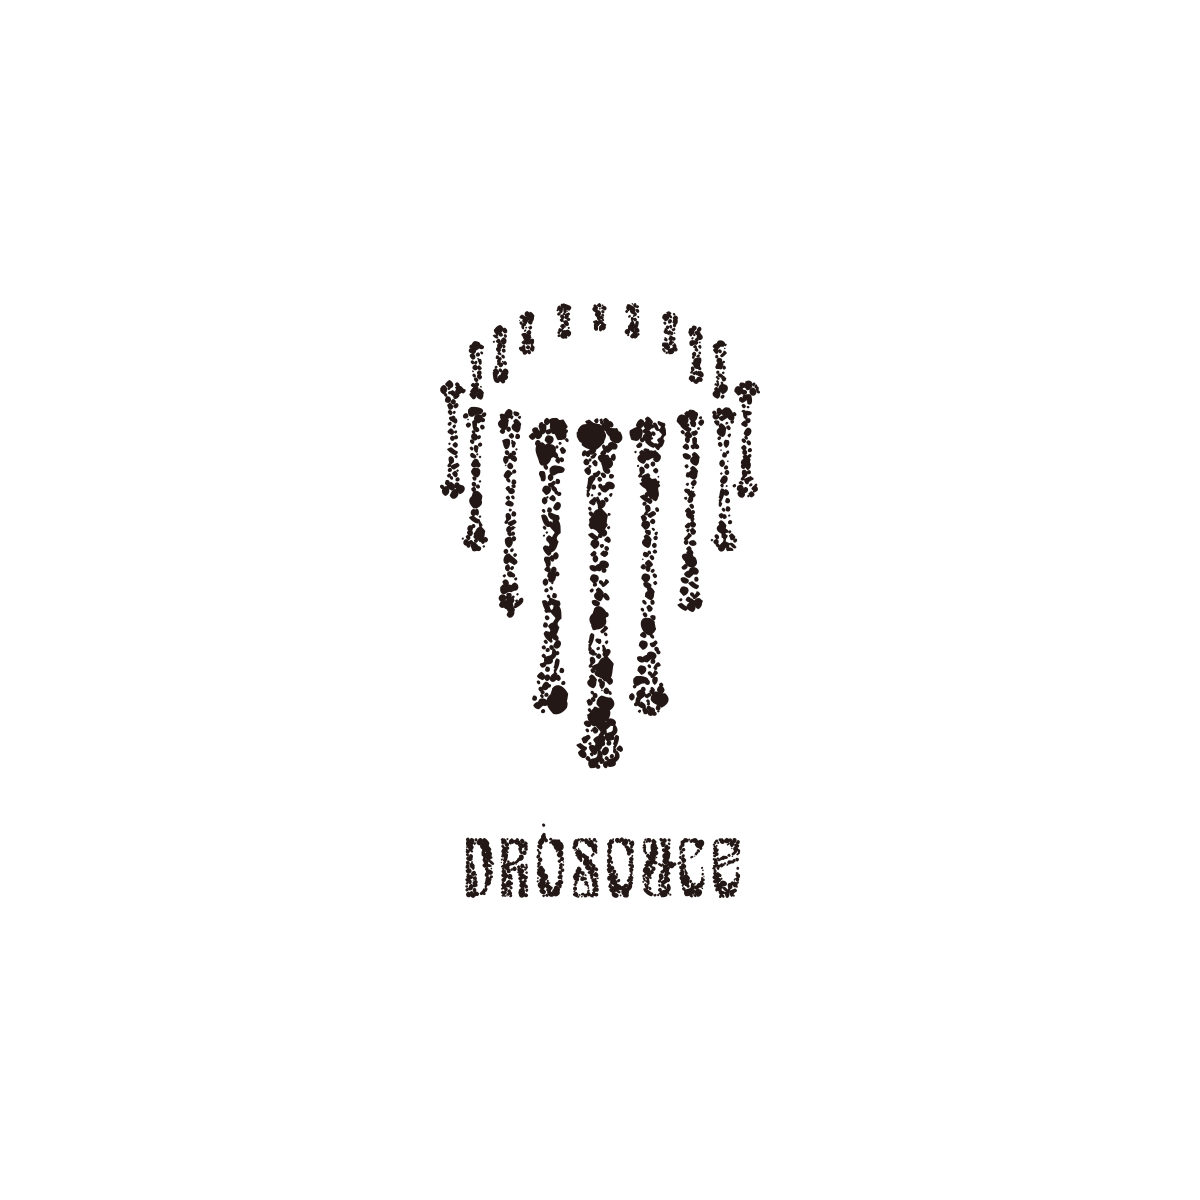 2019.6.9 Sun. Dro Souce Recordings Website Released